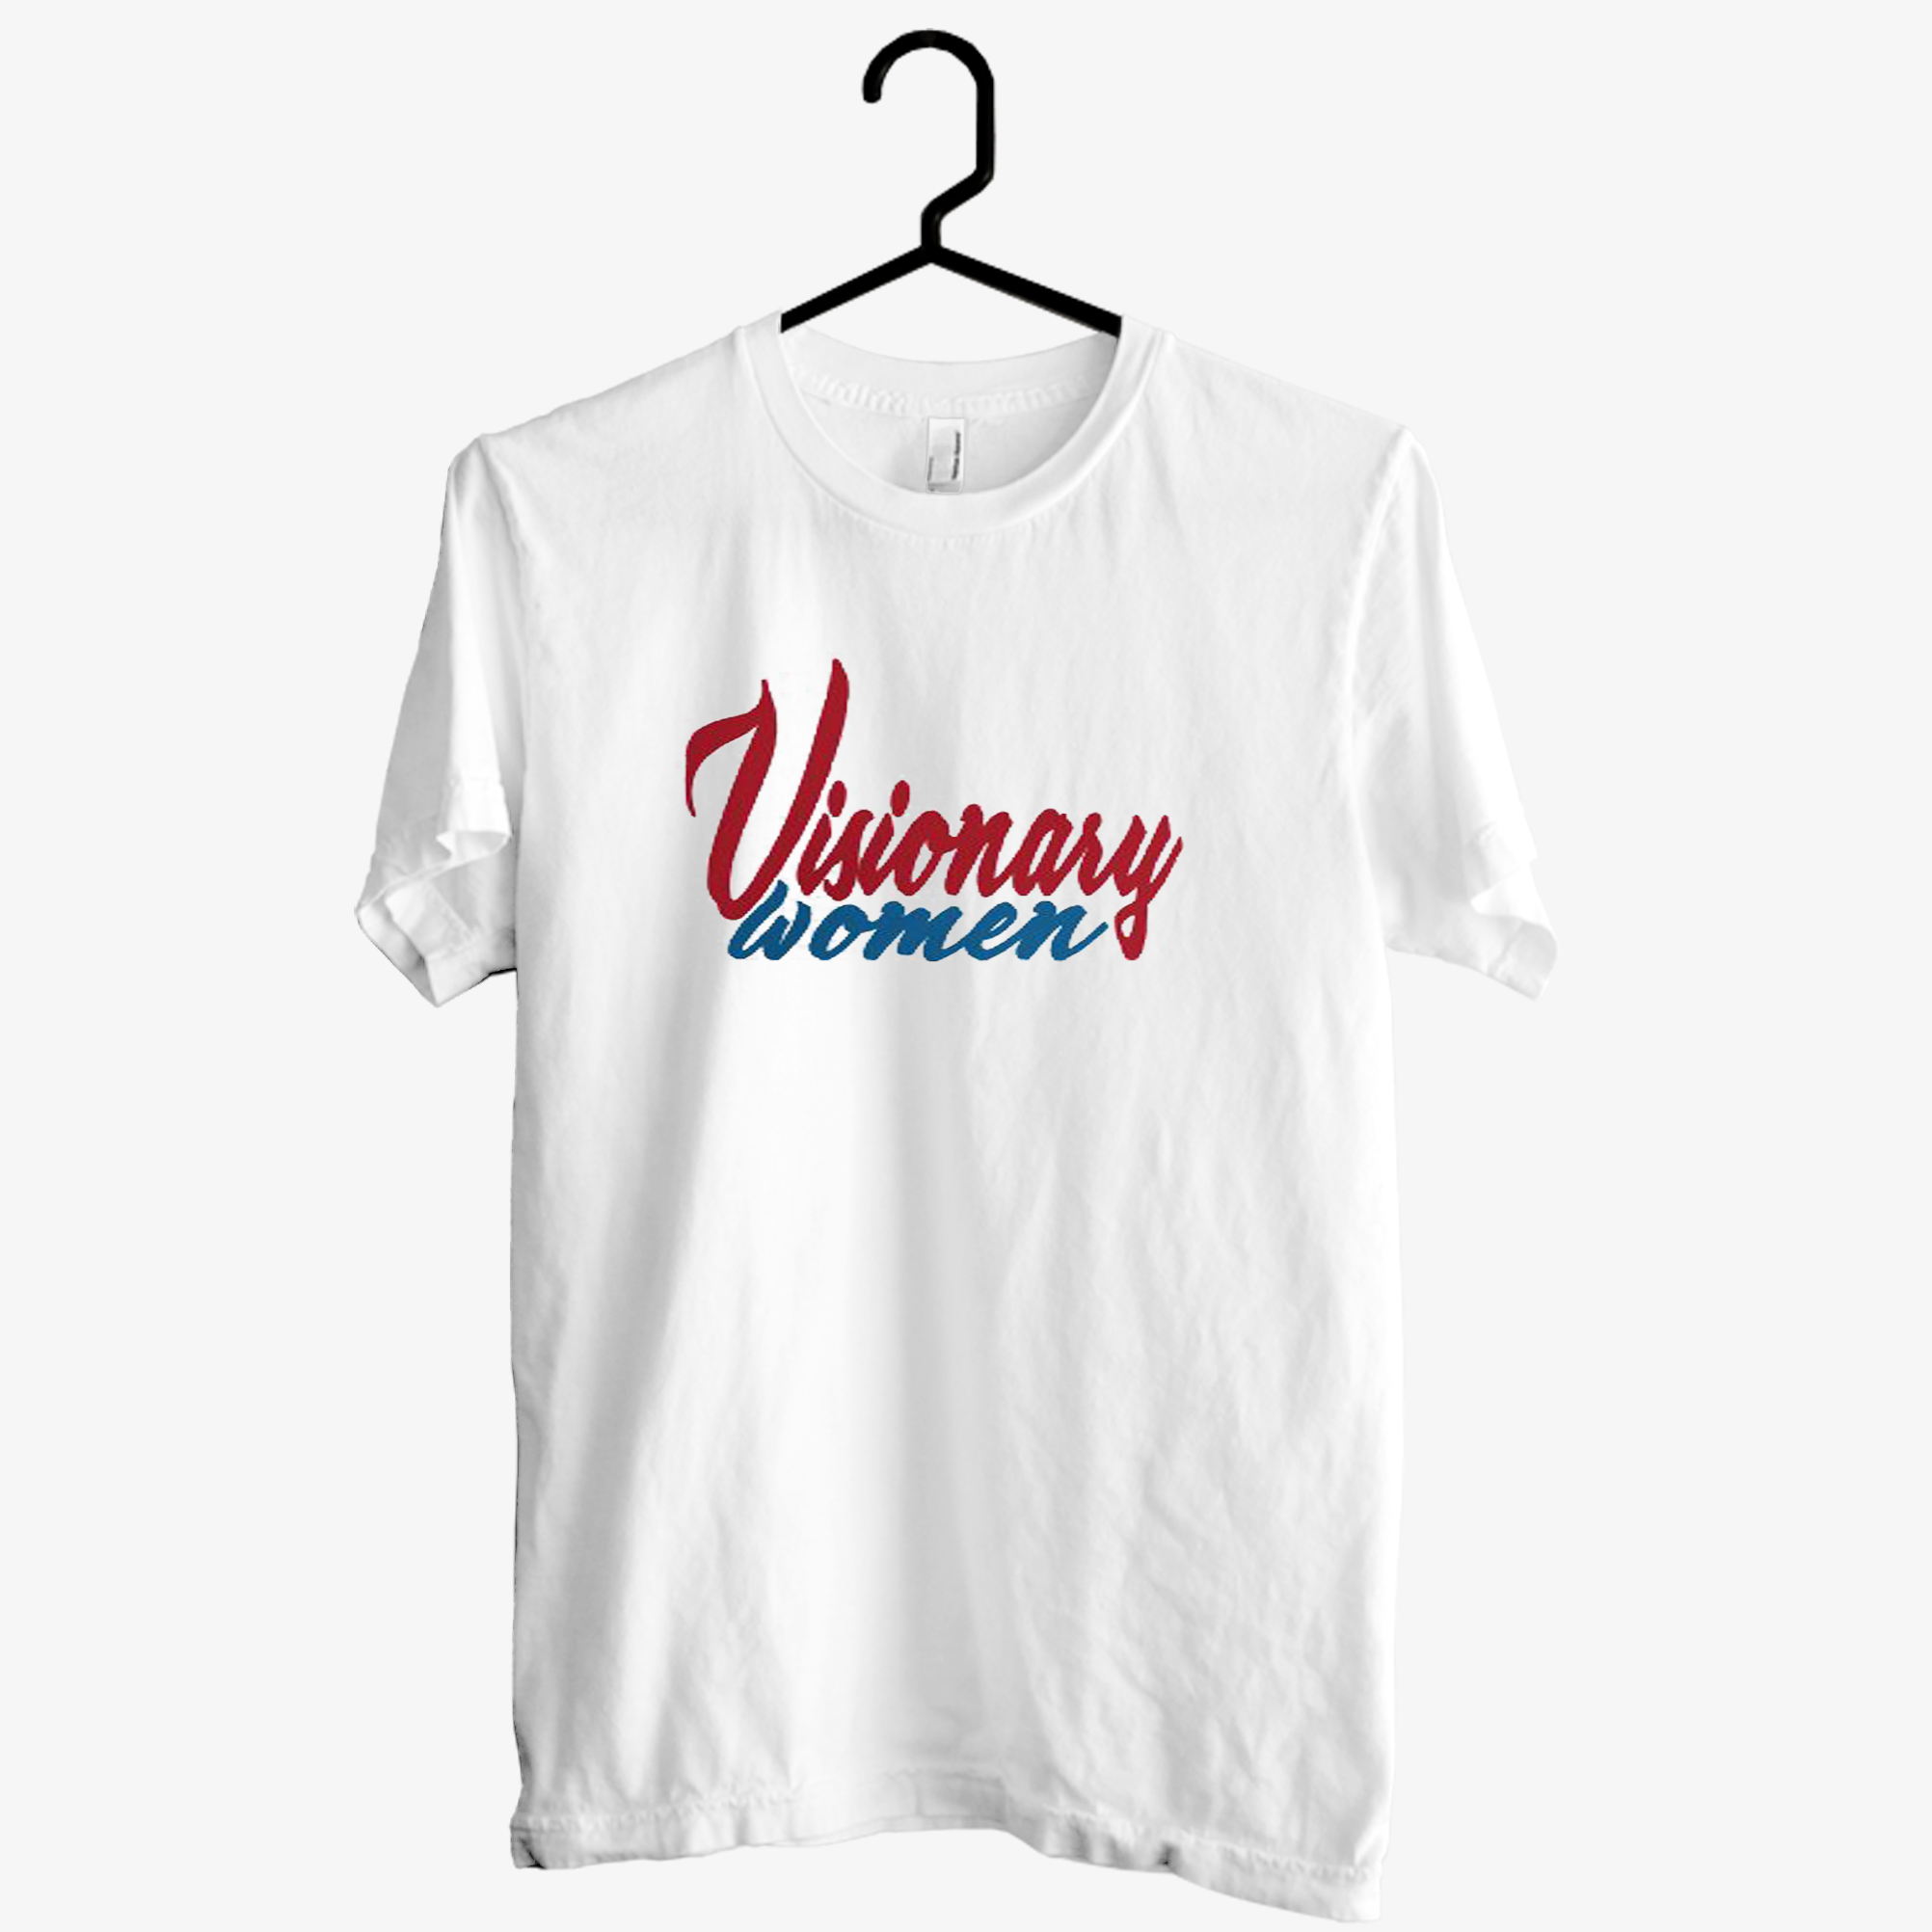 Visionary Woman T shirt